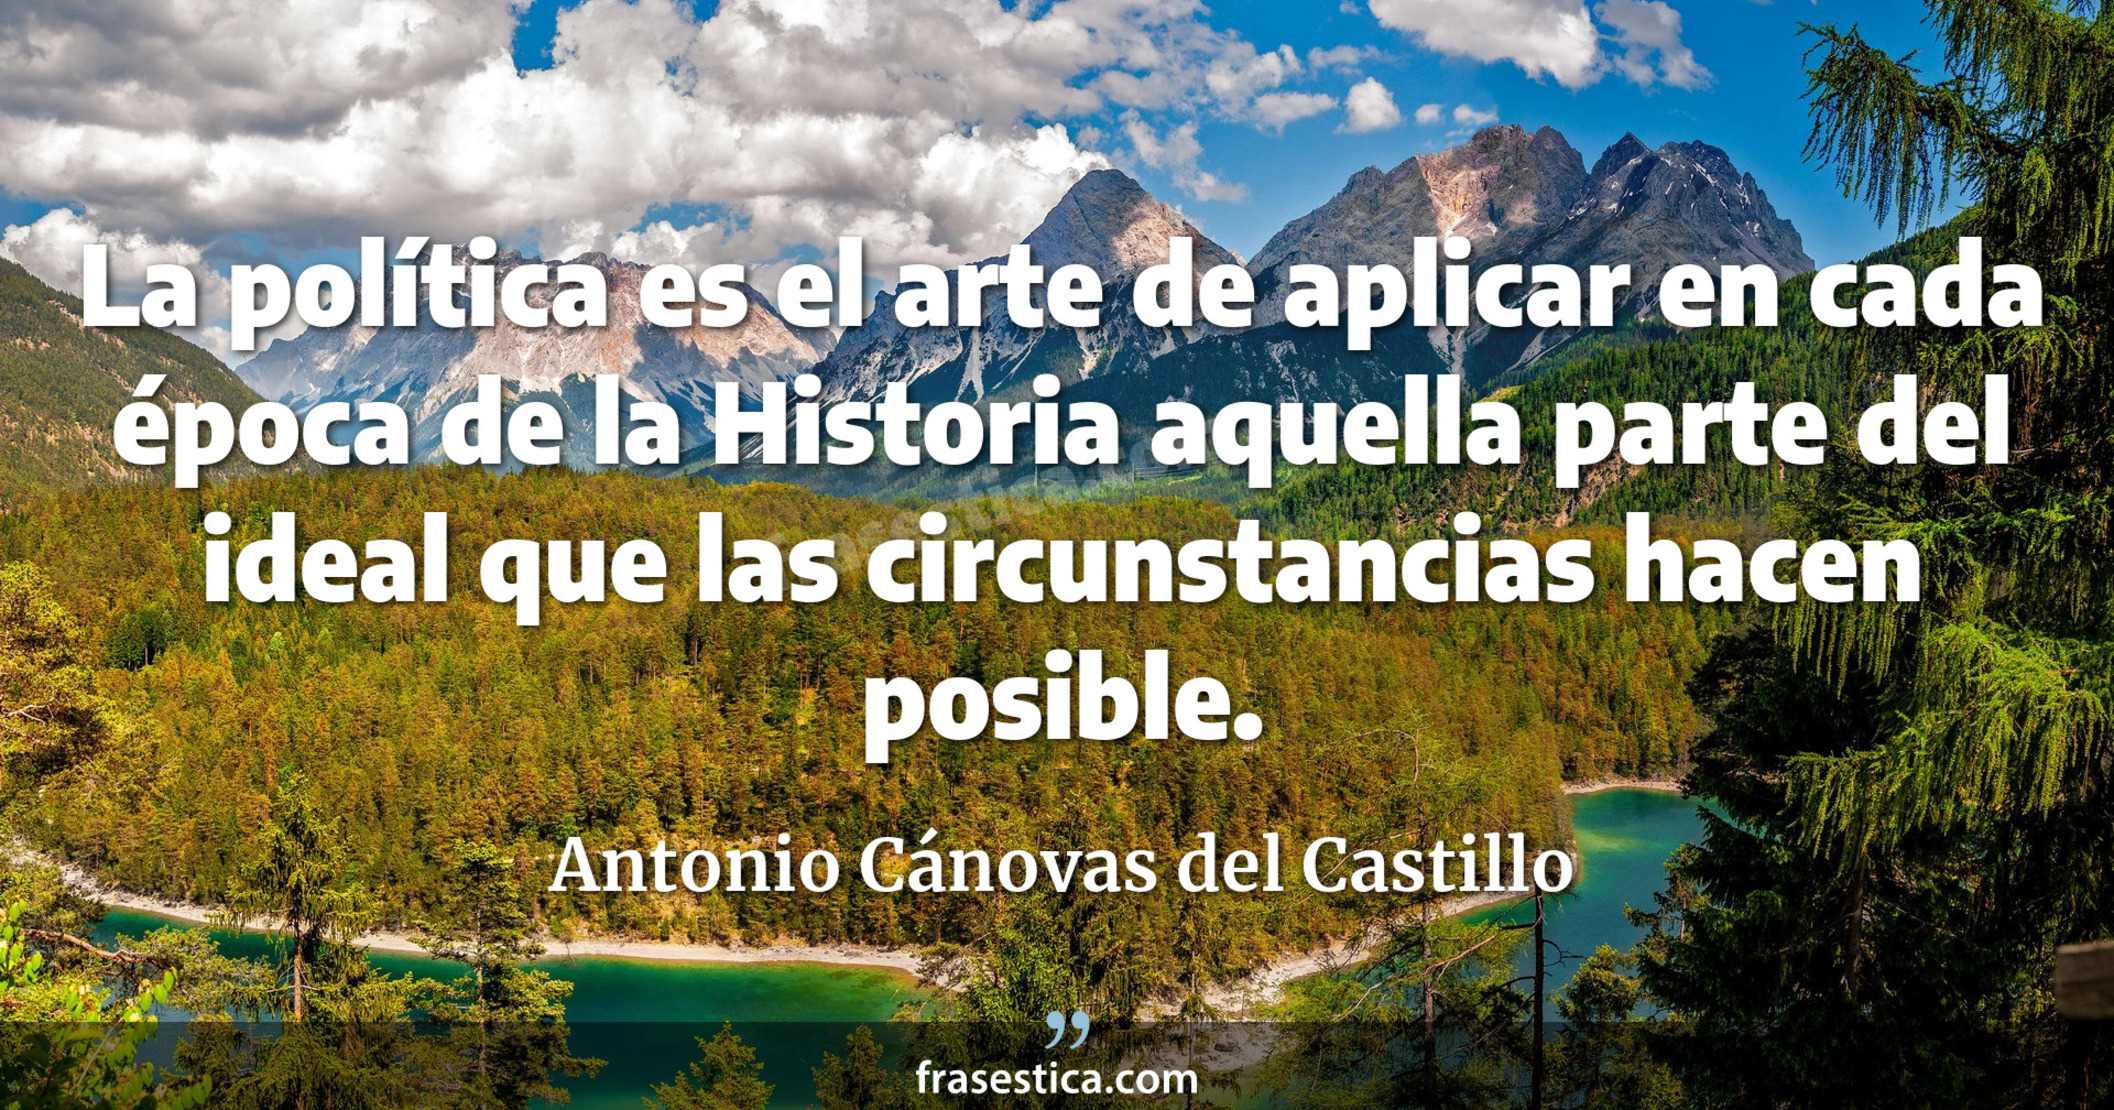 La política es el arte de aplicar en cada época de la Historia aquella parte del ideal que las circunstancias hacen posible. - Antonio Cánovas del Castillo